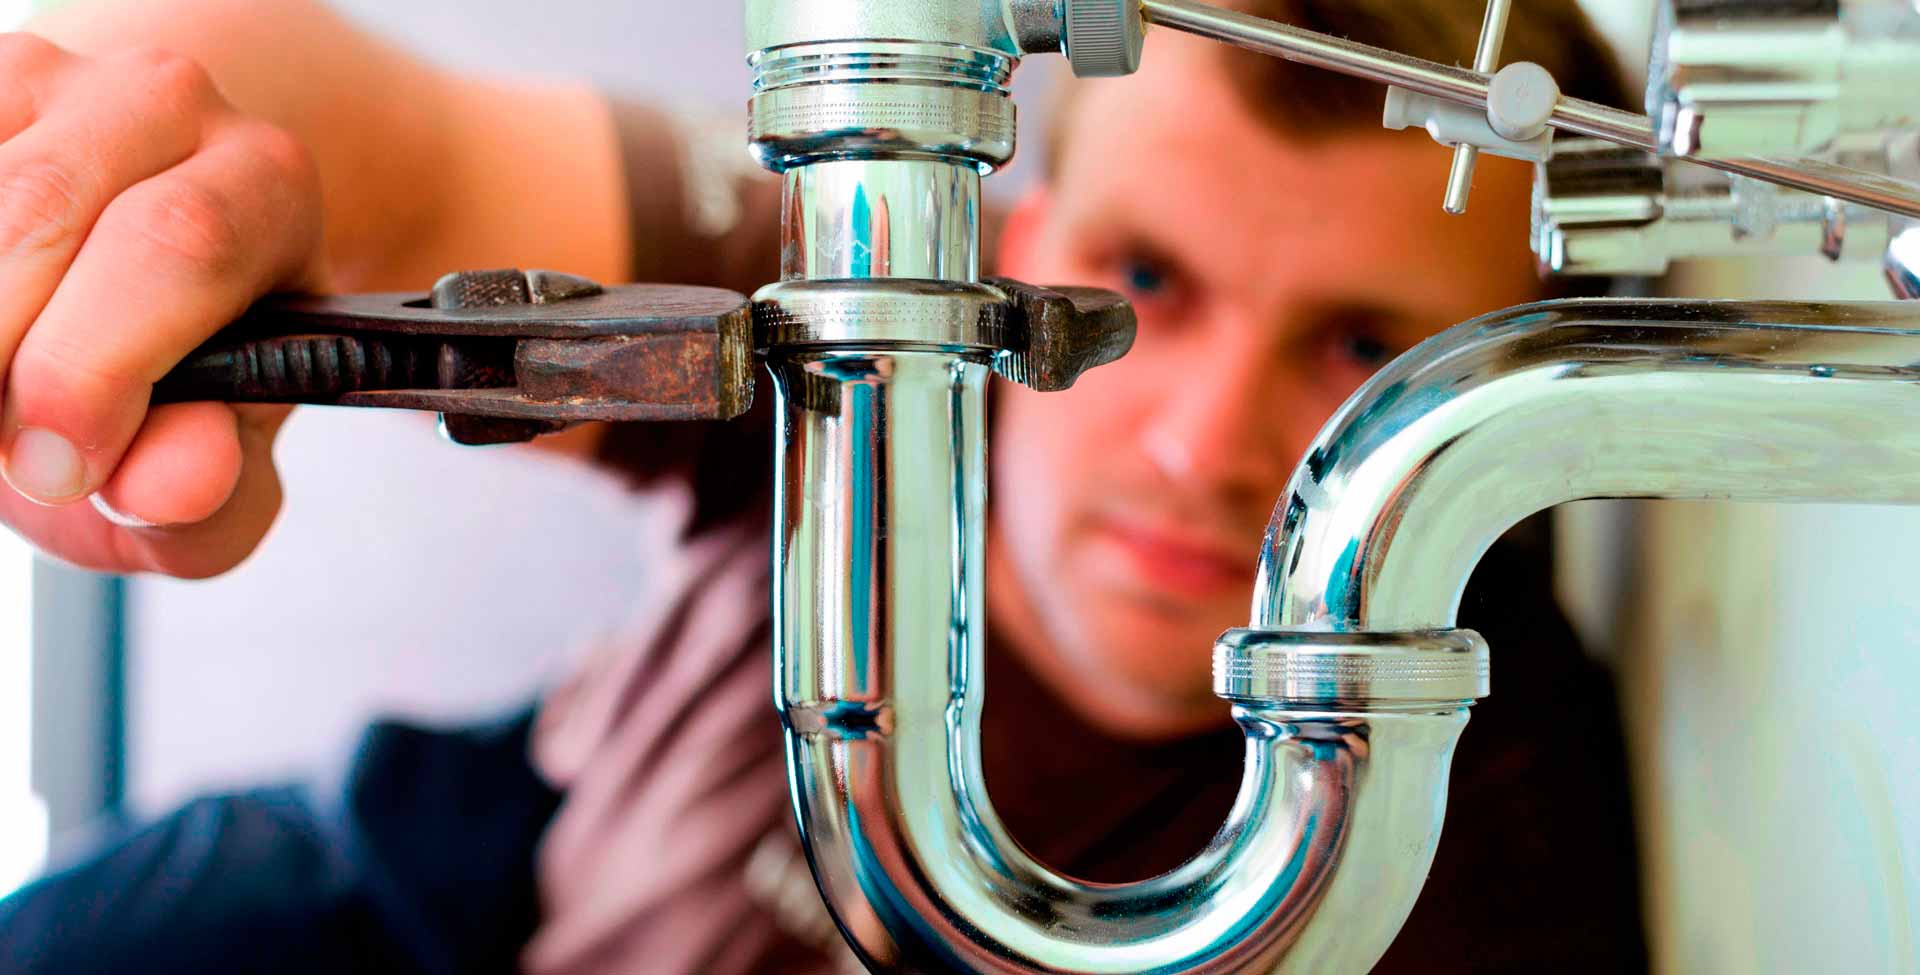 destroy plumbing - نکاتی در مورد طراحی موتور خانه - آرین پادرا صنعت